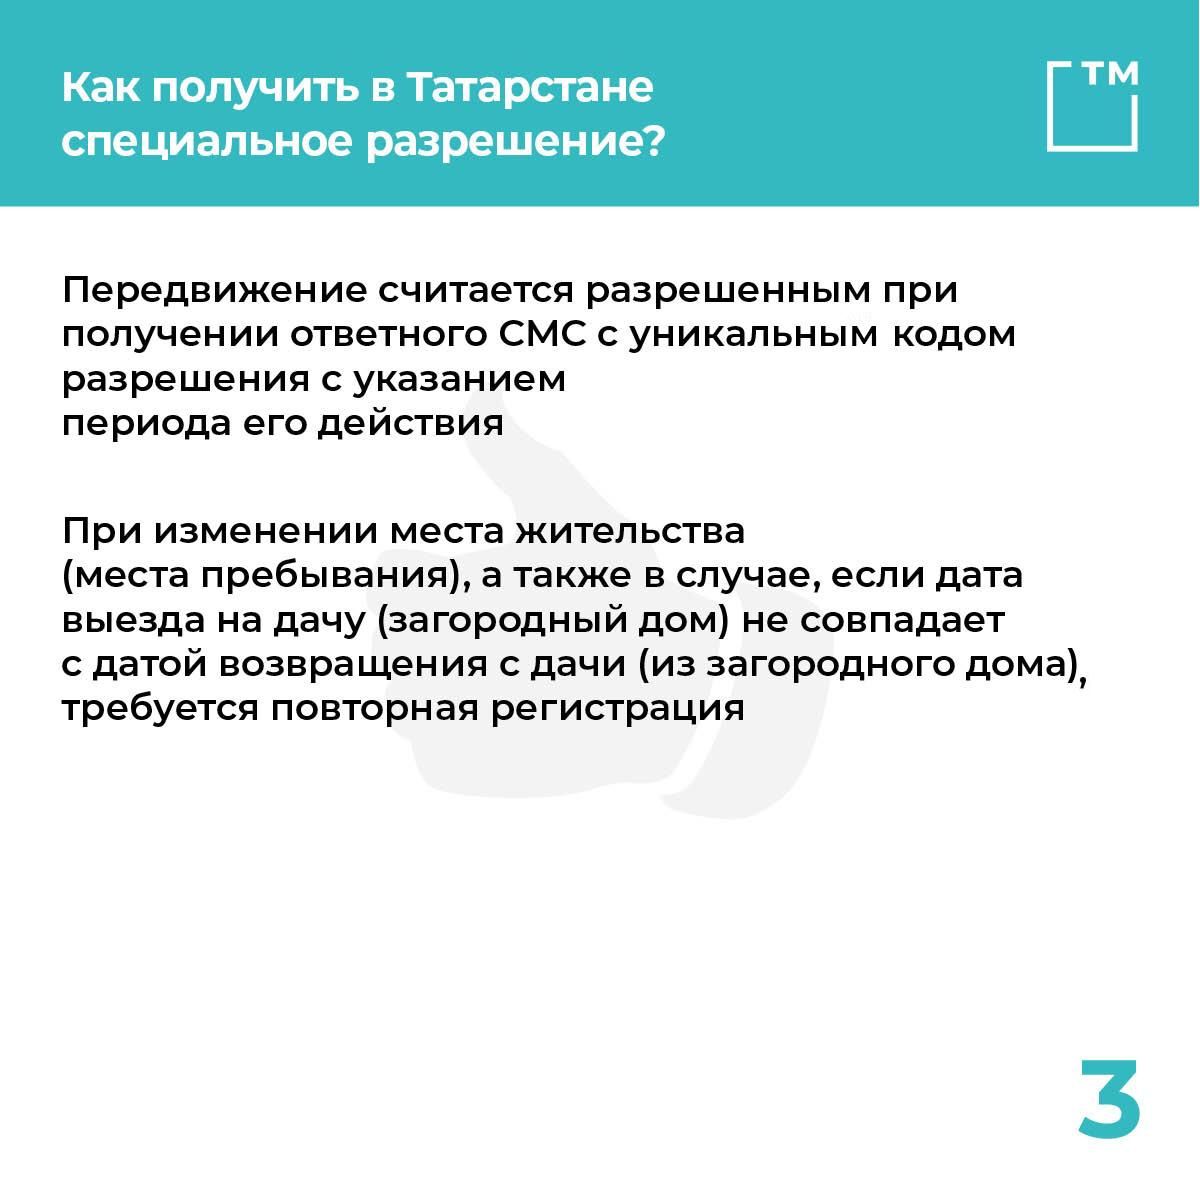 Утвержден порядок получения спецпропусков на время самоизоляции в Татарстане